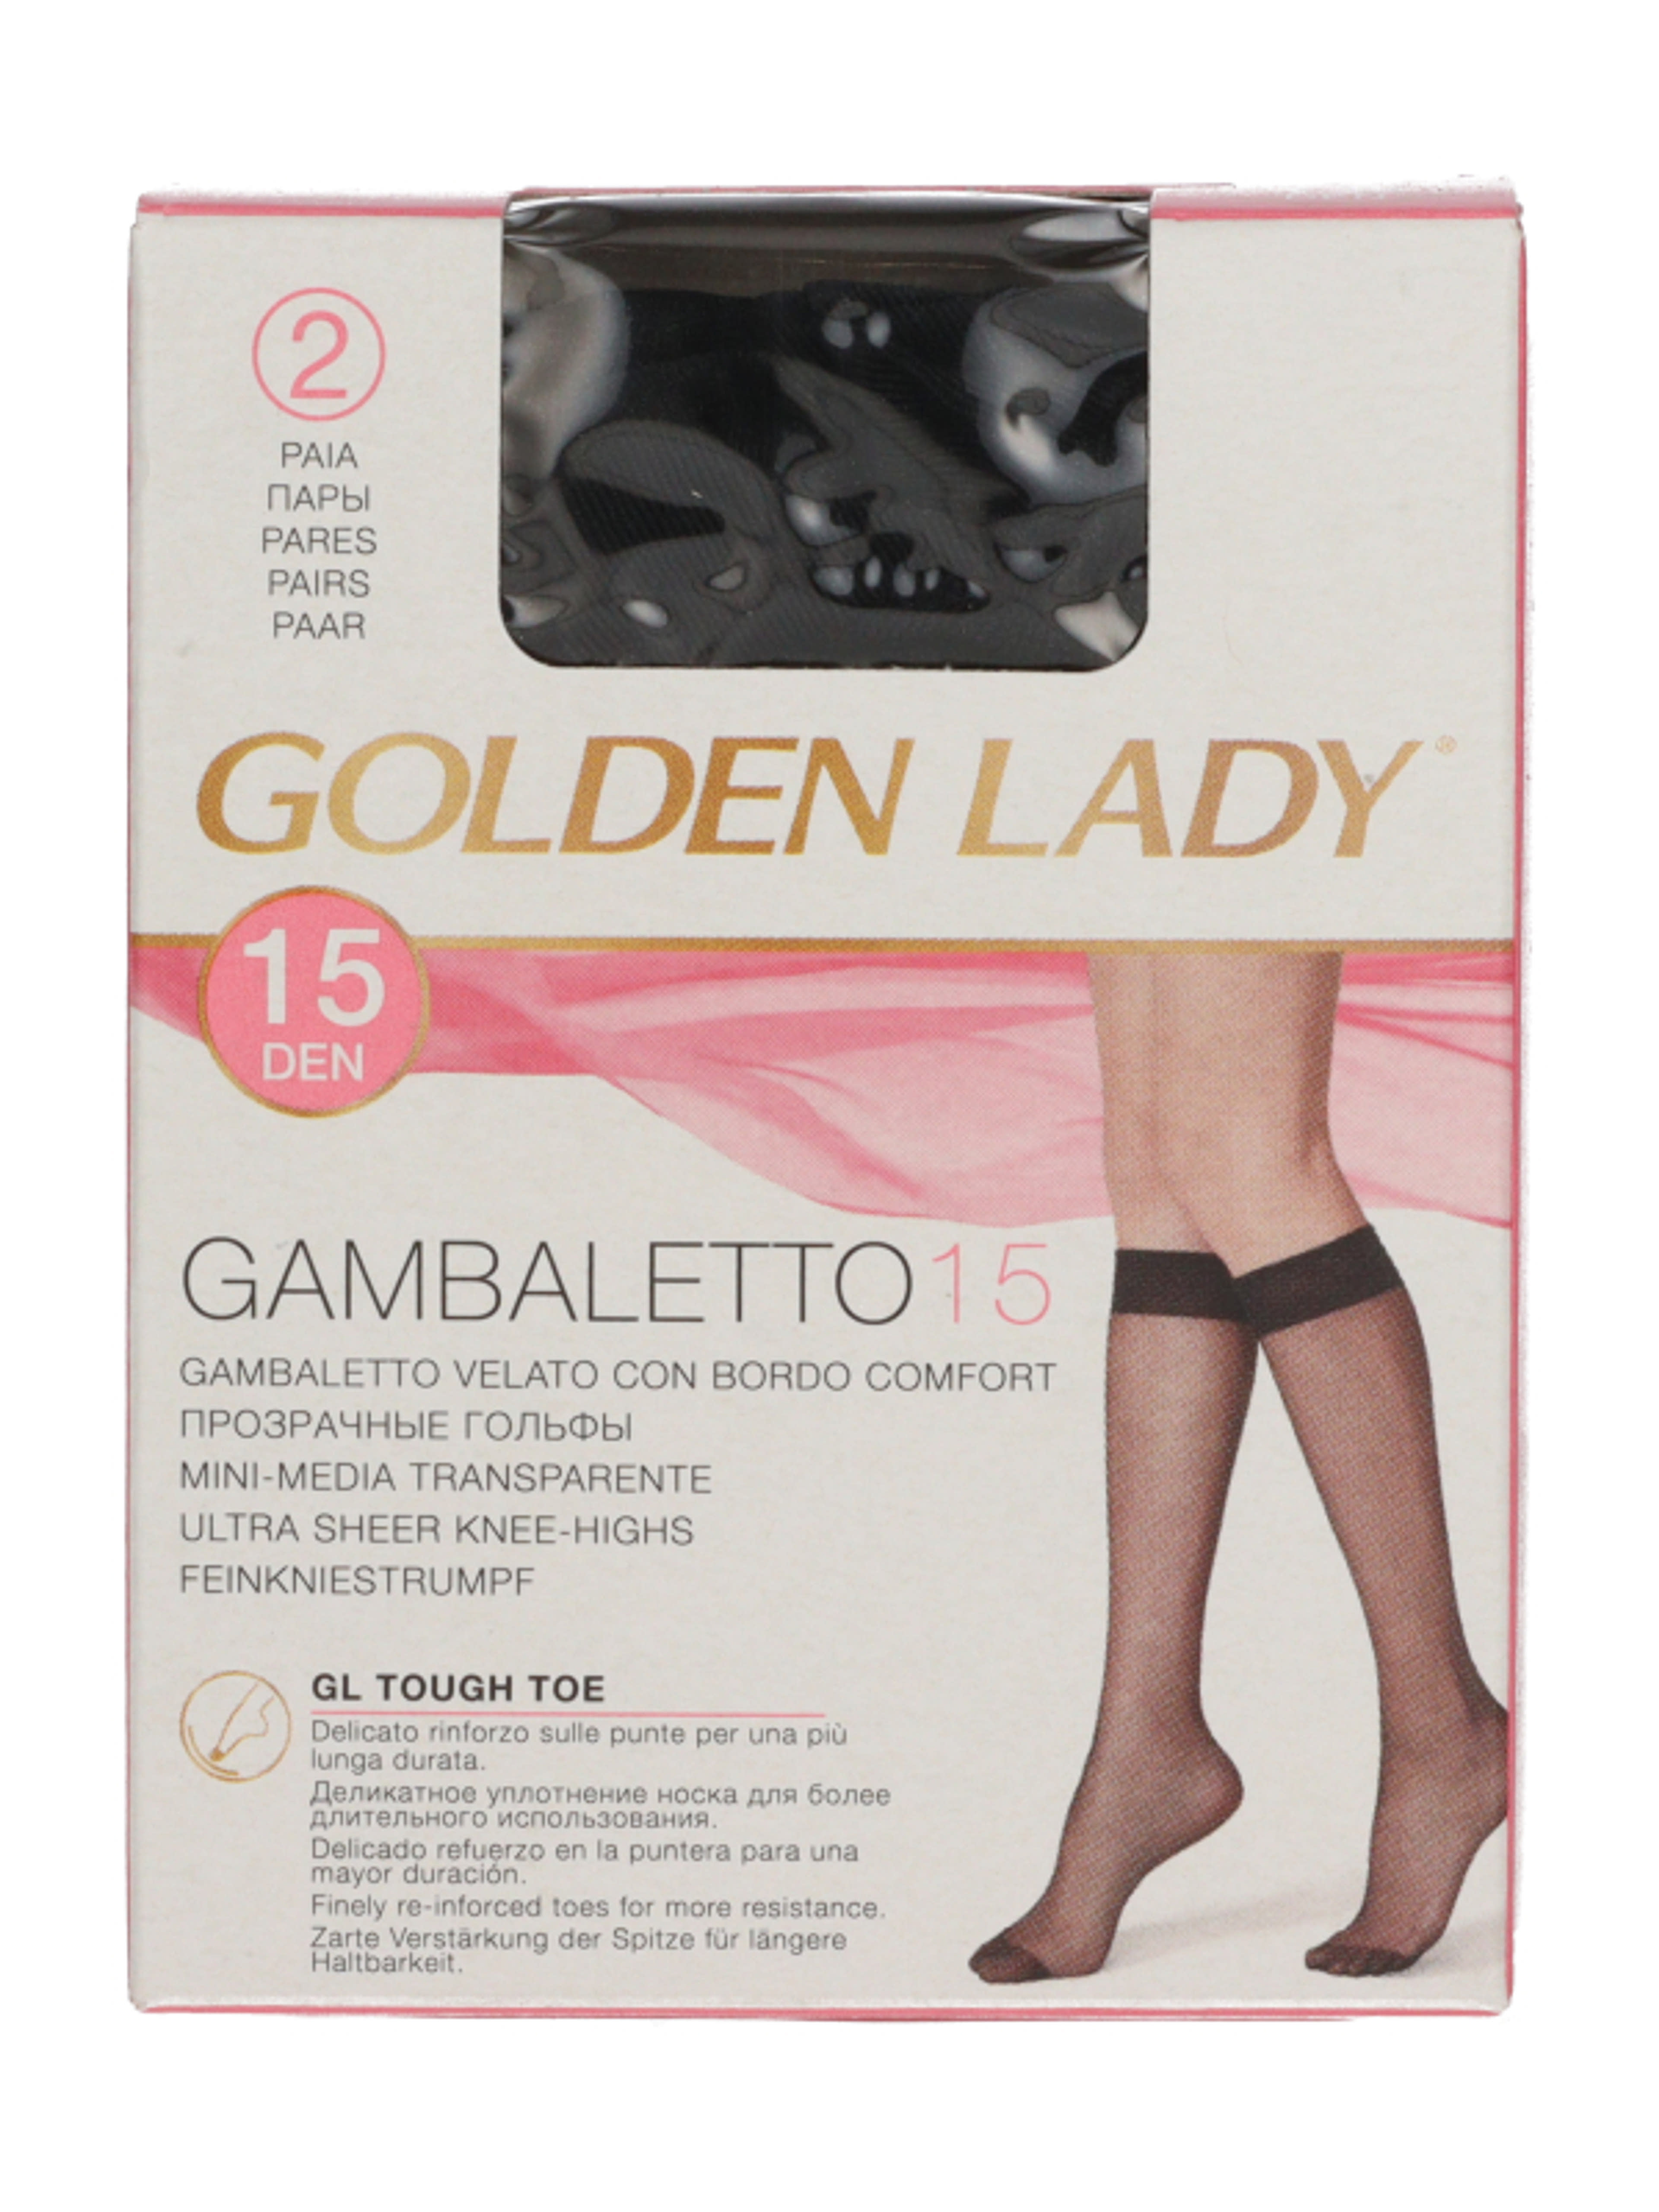 Golden Lady Gambaletto térdfix 15 Den fekete - 2 db